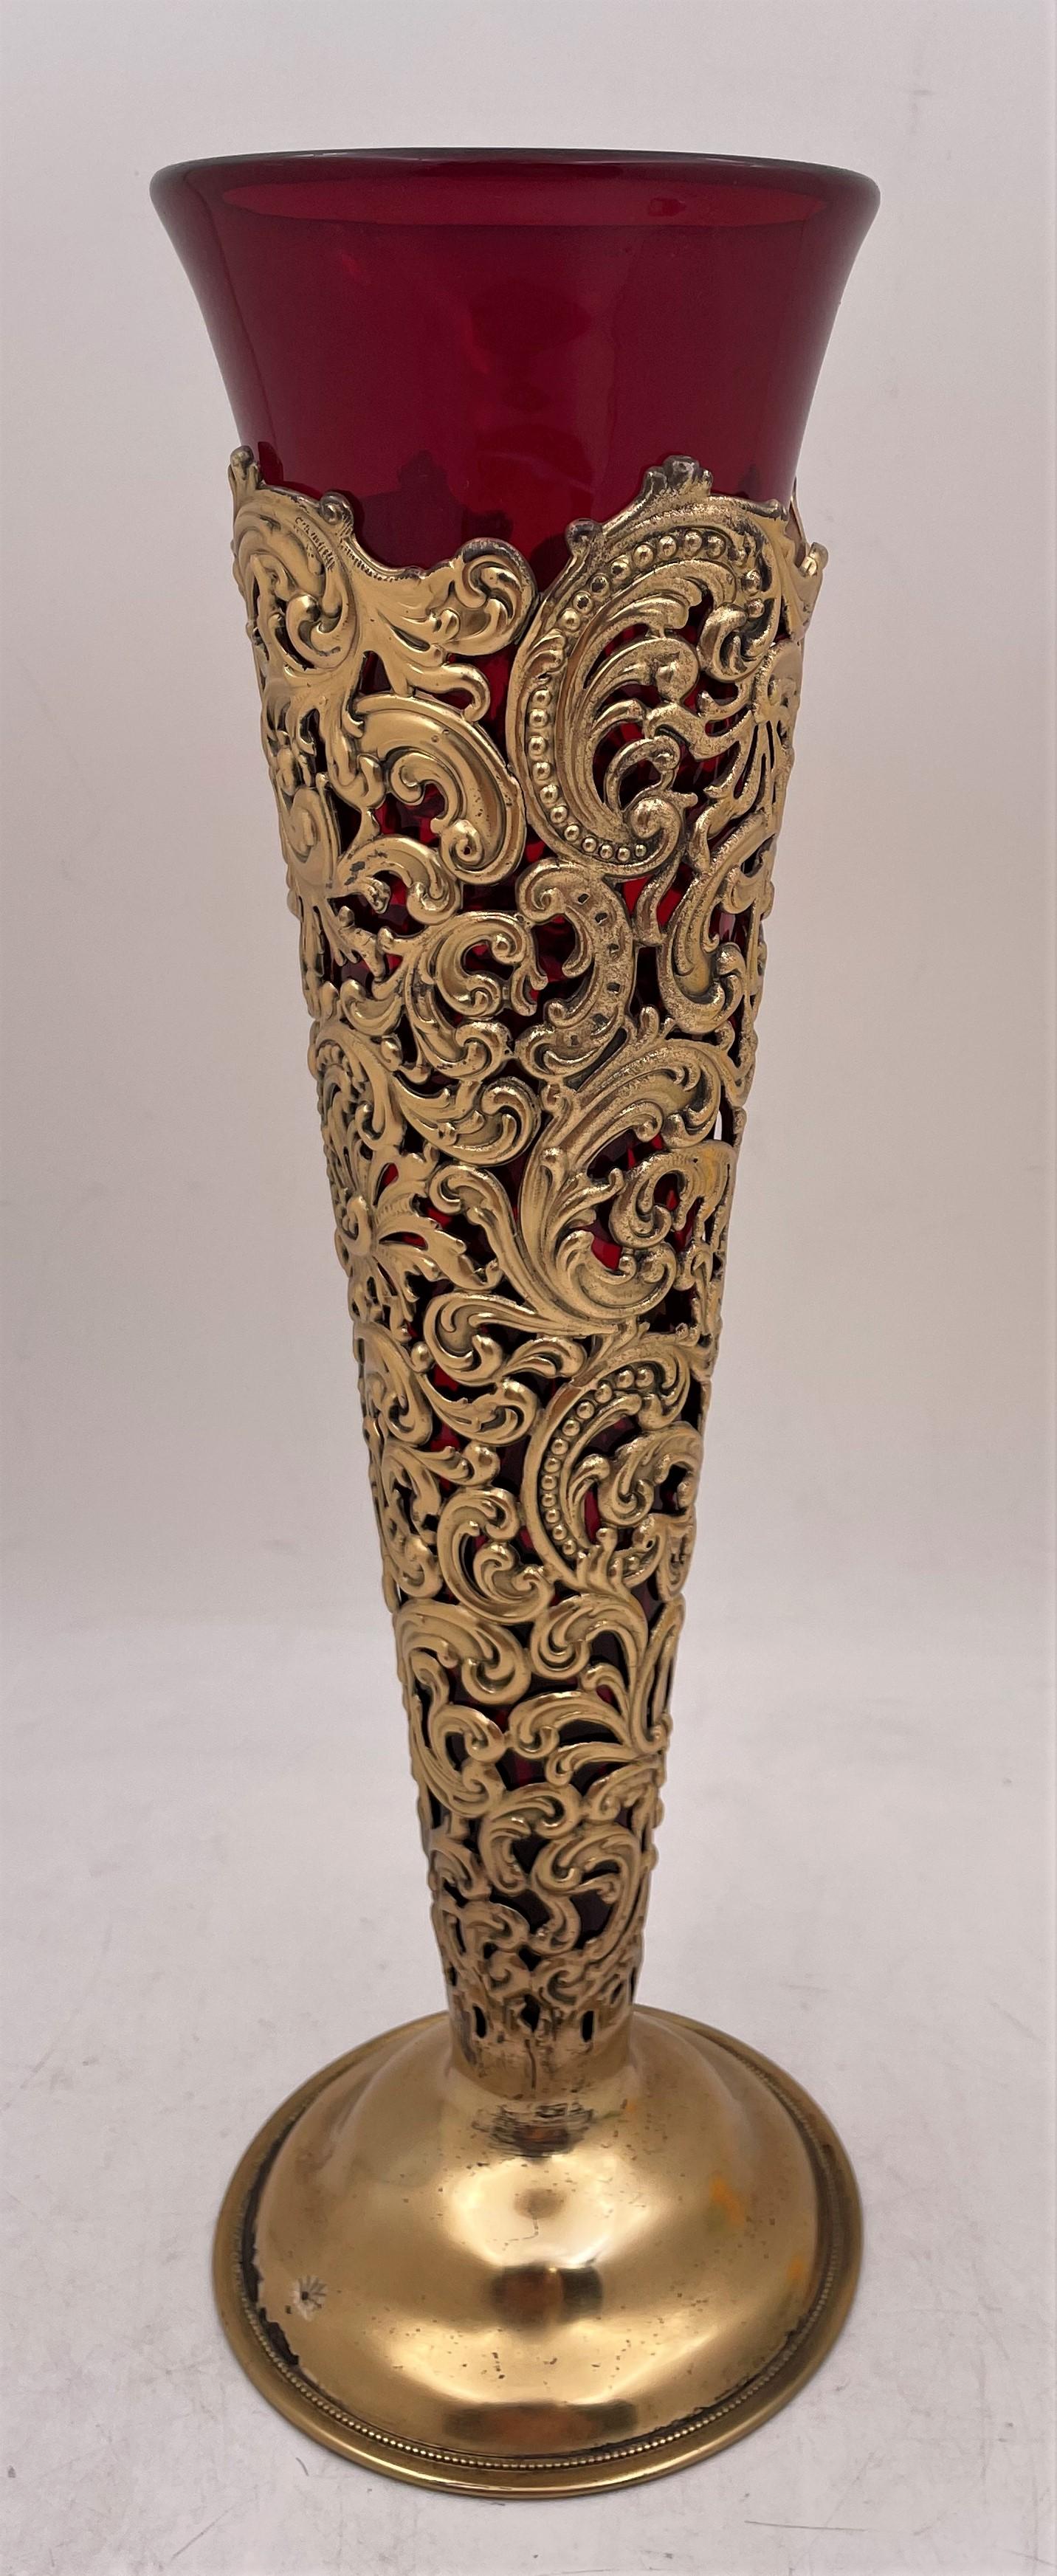 Vase en vermeil Dominick & Haff de 1898, modèle 326A, dont le corps richement orné présente des motifs élaborés, légèrement en relief, en forme de volutes. Il est livré avec une doublure amovible en verre rouge, mesure 12 1/2'' de hauteur (14 1/8''